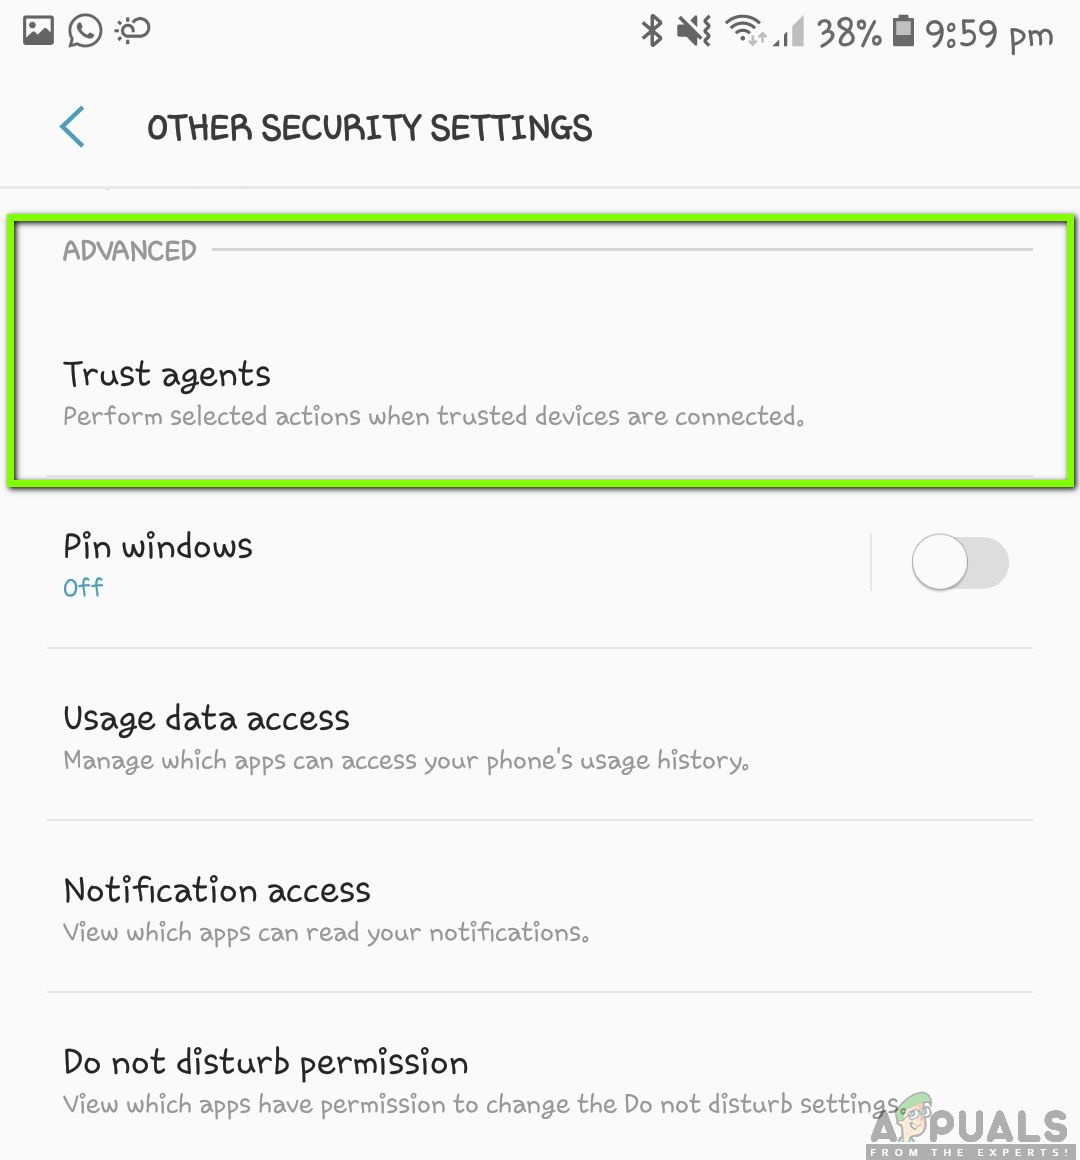 Нажатие доверенных агентов - другие параметры безопасности в Android